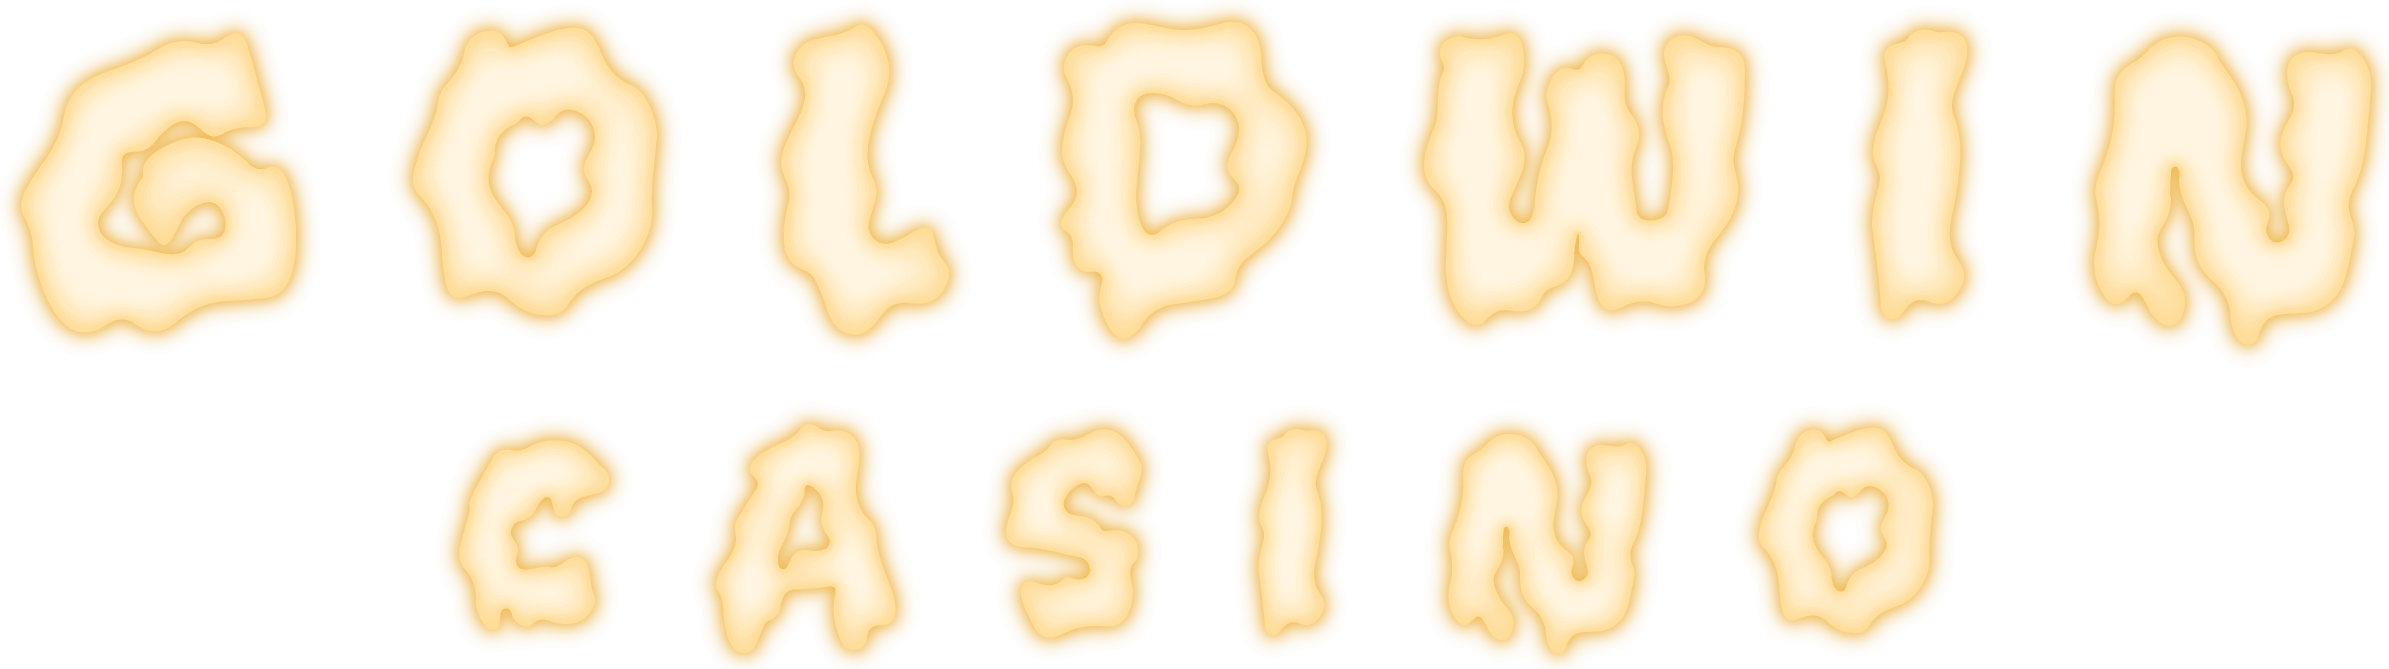 Goldwin Casino logo